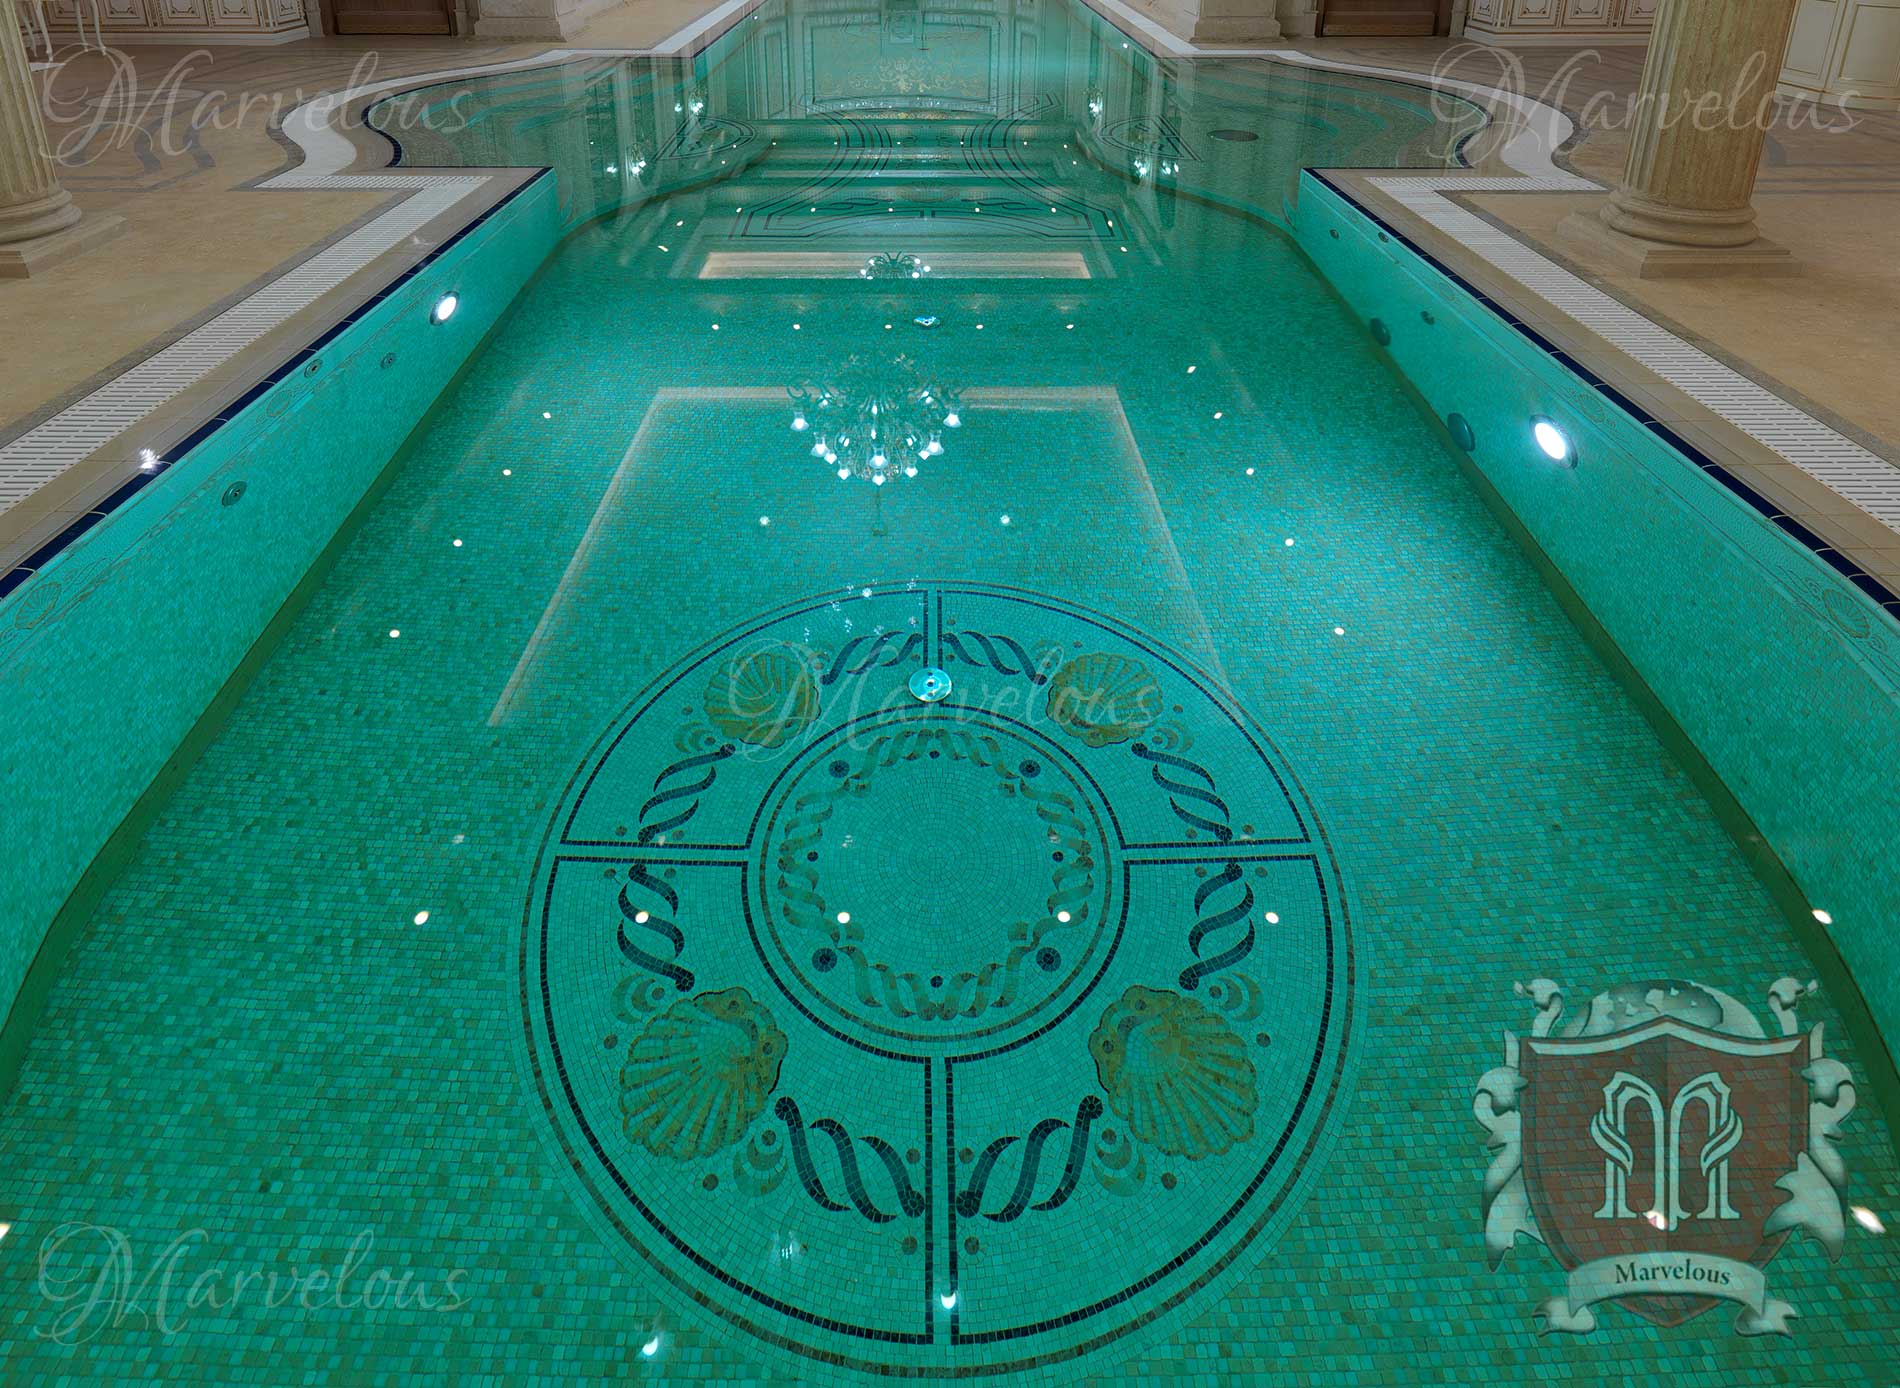 Marble Pool Mosaic: Belcanto